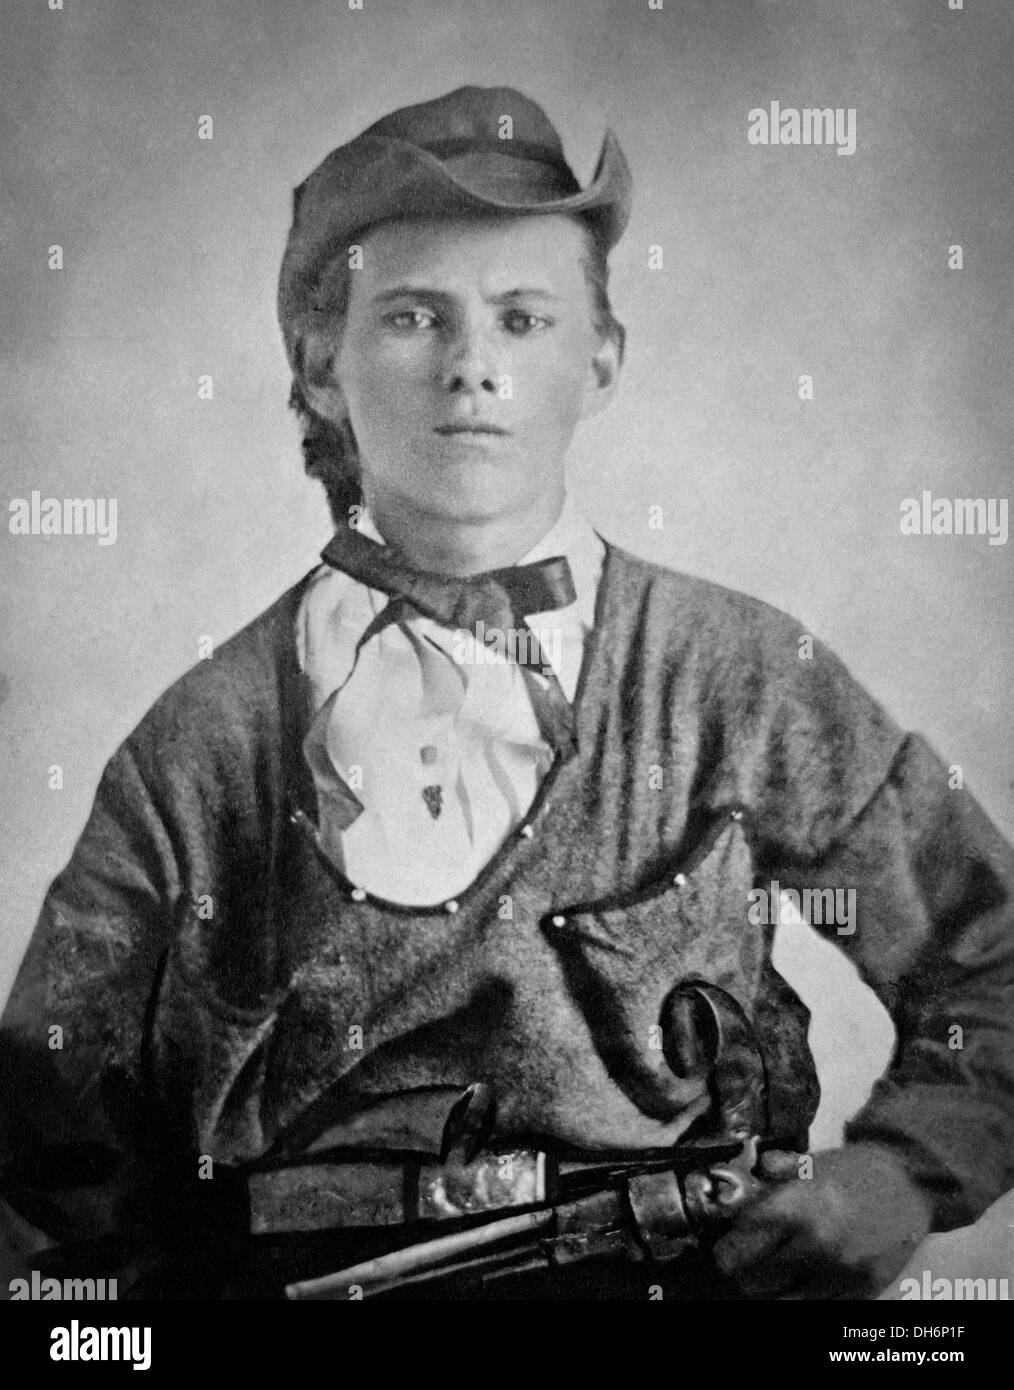 Jesse James, Jesse Woodson James (1847-1882) di 17 anni nell'uniforme del Quantrill di predatori durante la Guerra Civile Americana. Foto Stock